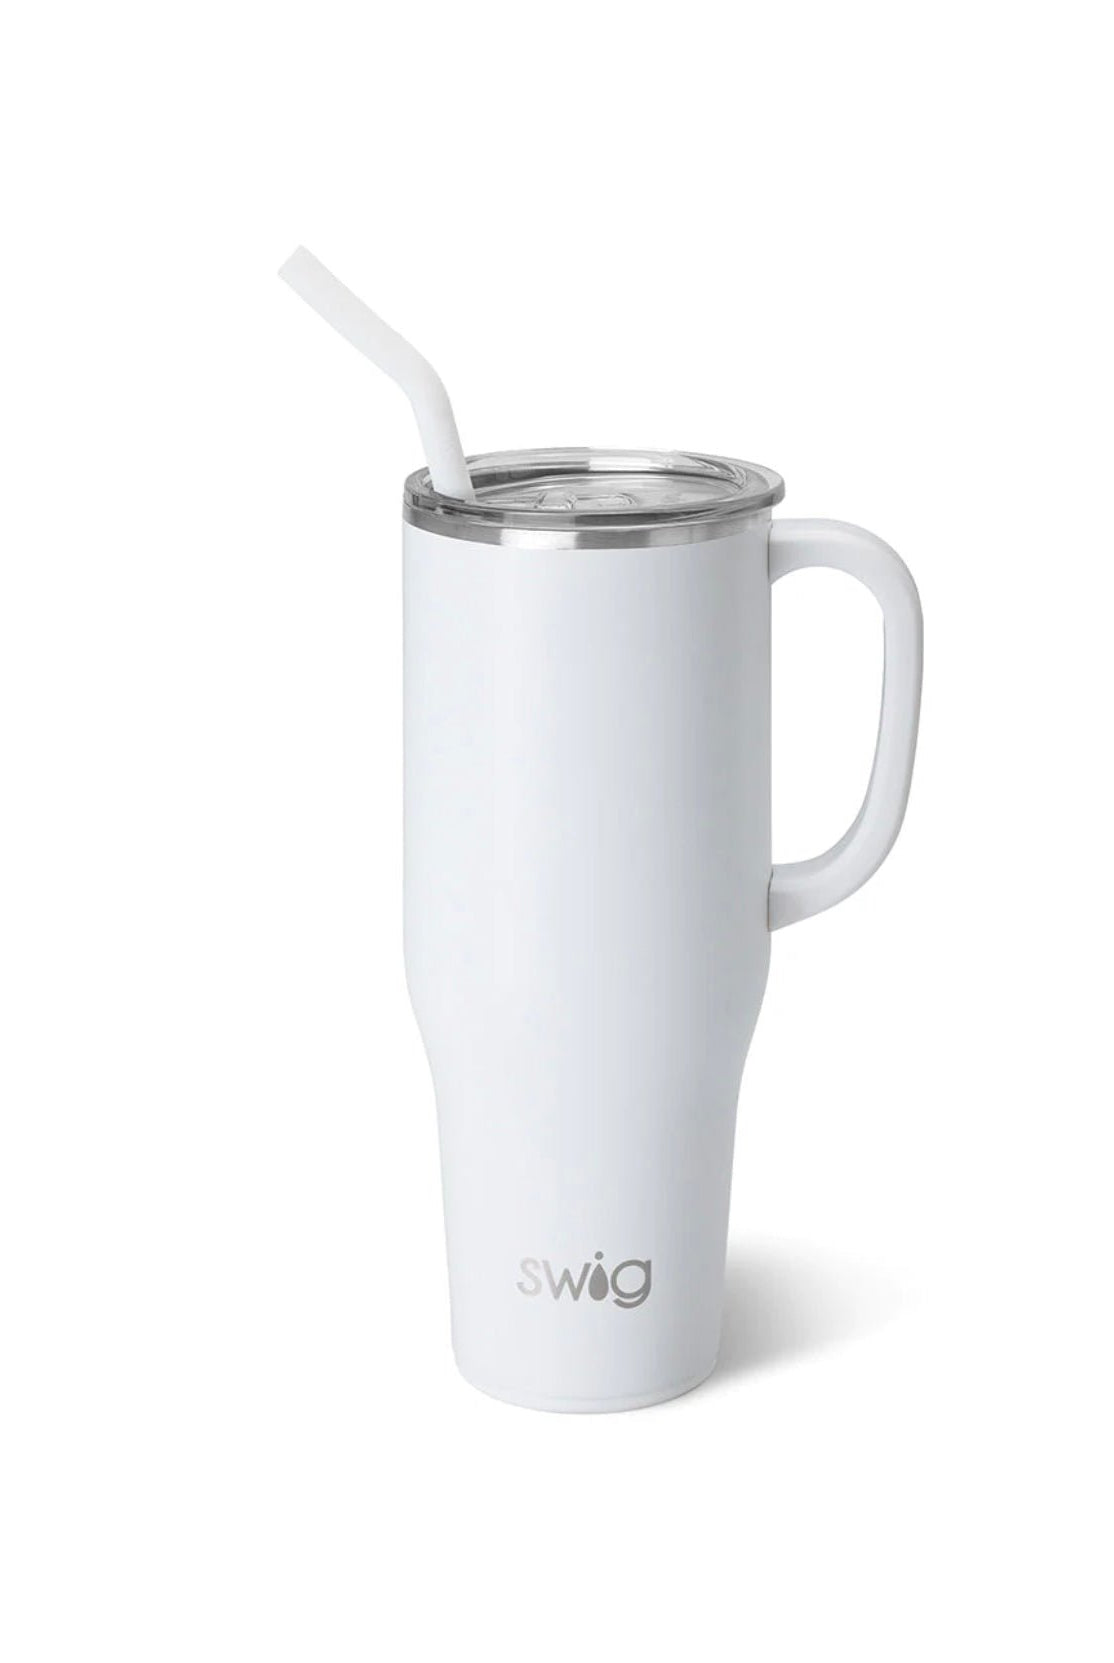 Swig Mega Mug 40 oz - White - -Jimberly's Boutique-Olive Branch-Mississippi